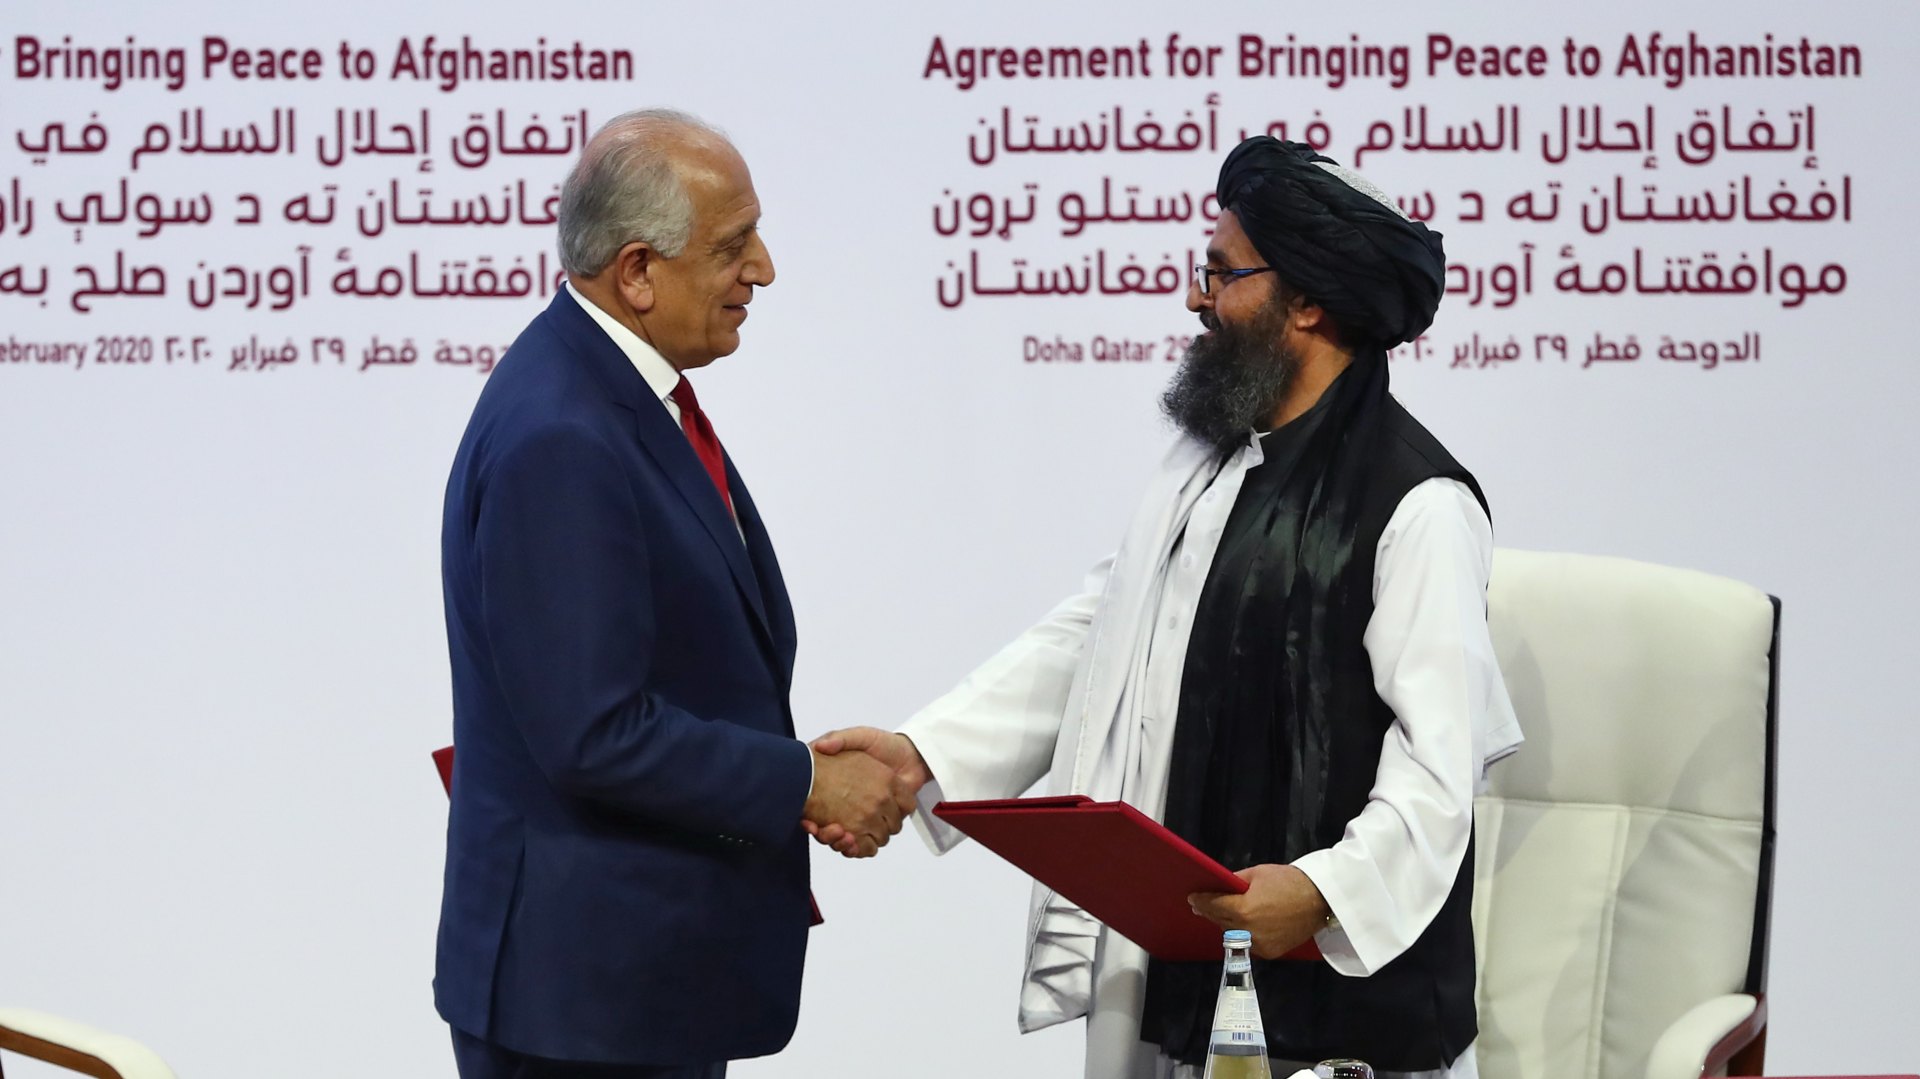 EEUU y los talibanes firman un histórico acuerdo para retirar tropas norteamericanas de Afganistán